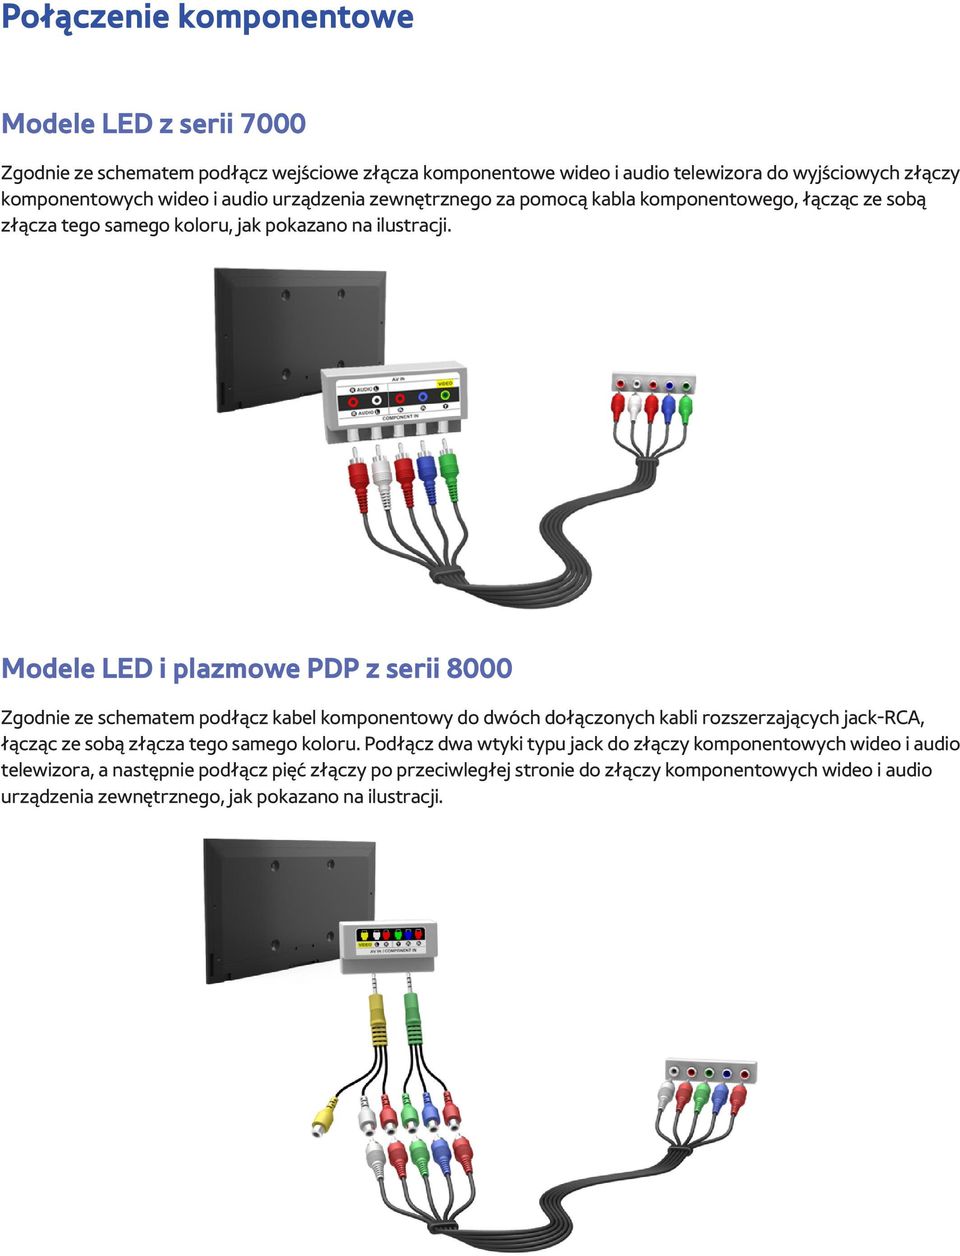 Modele LED i plazmowe PDP z serii 8000 Zgodnie ze schematem podłącz kabel komponentowy do dwóch dołączonych kabli rozszerzających jack-rca, łącząc ze sobą złącza tego samego